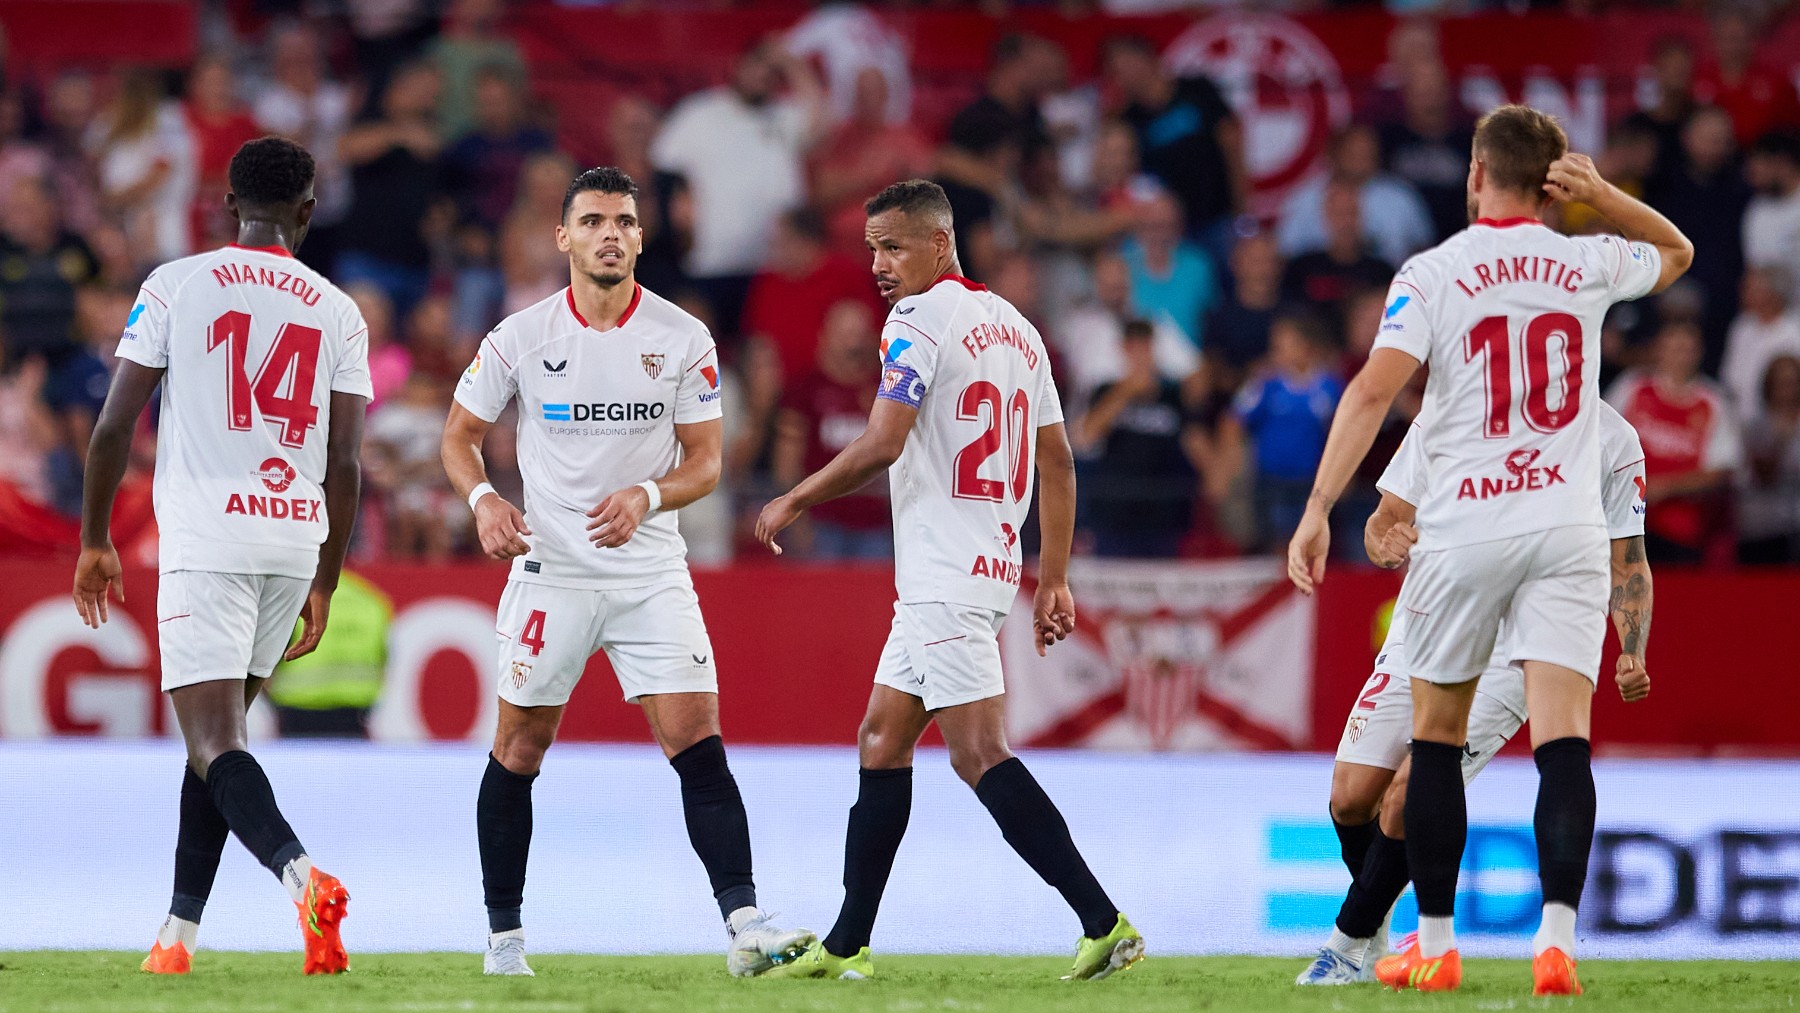 Los jugadores del Sevilla durante un partido. (Getty)